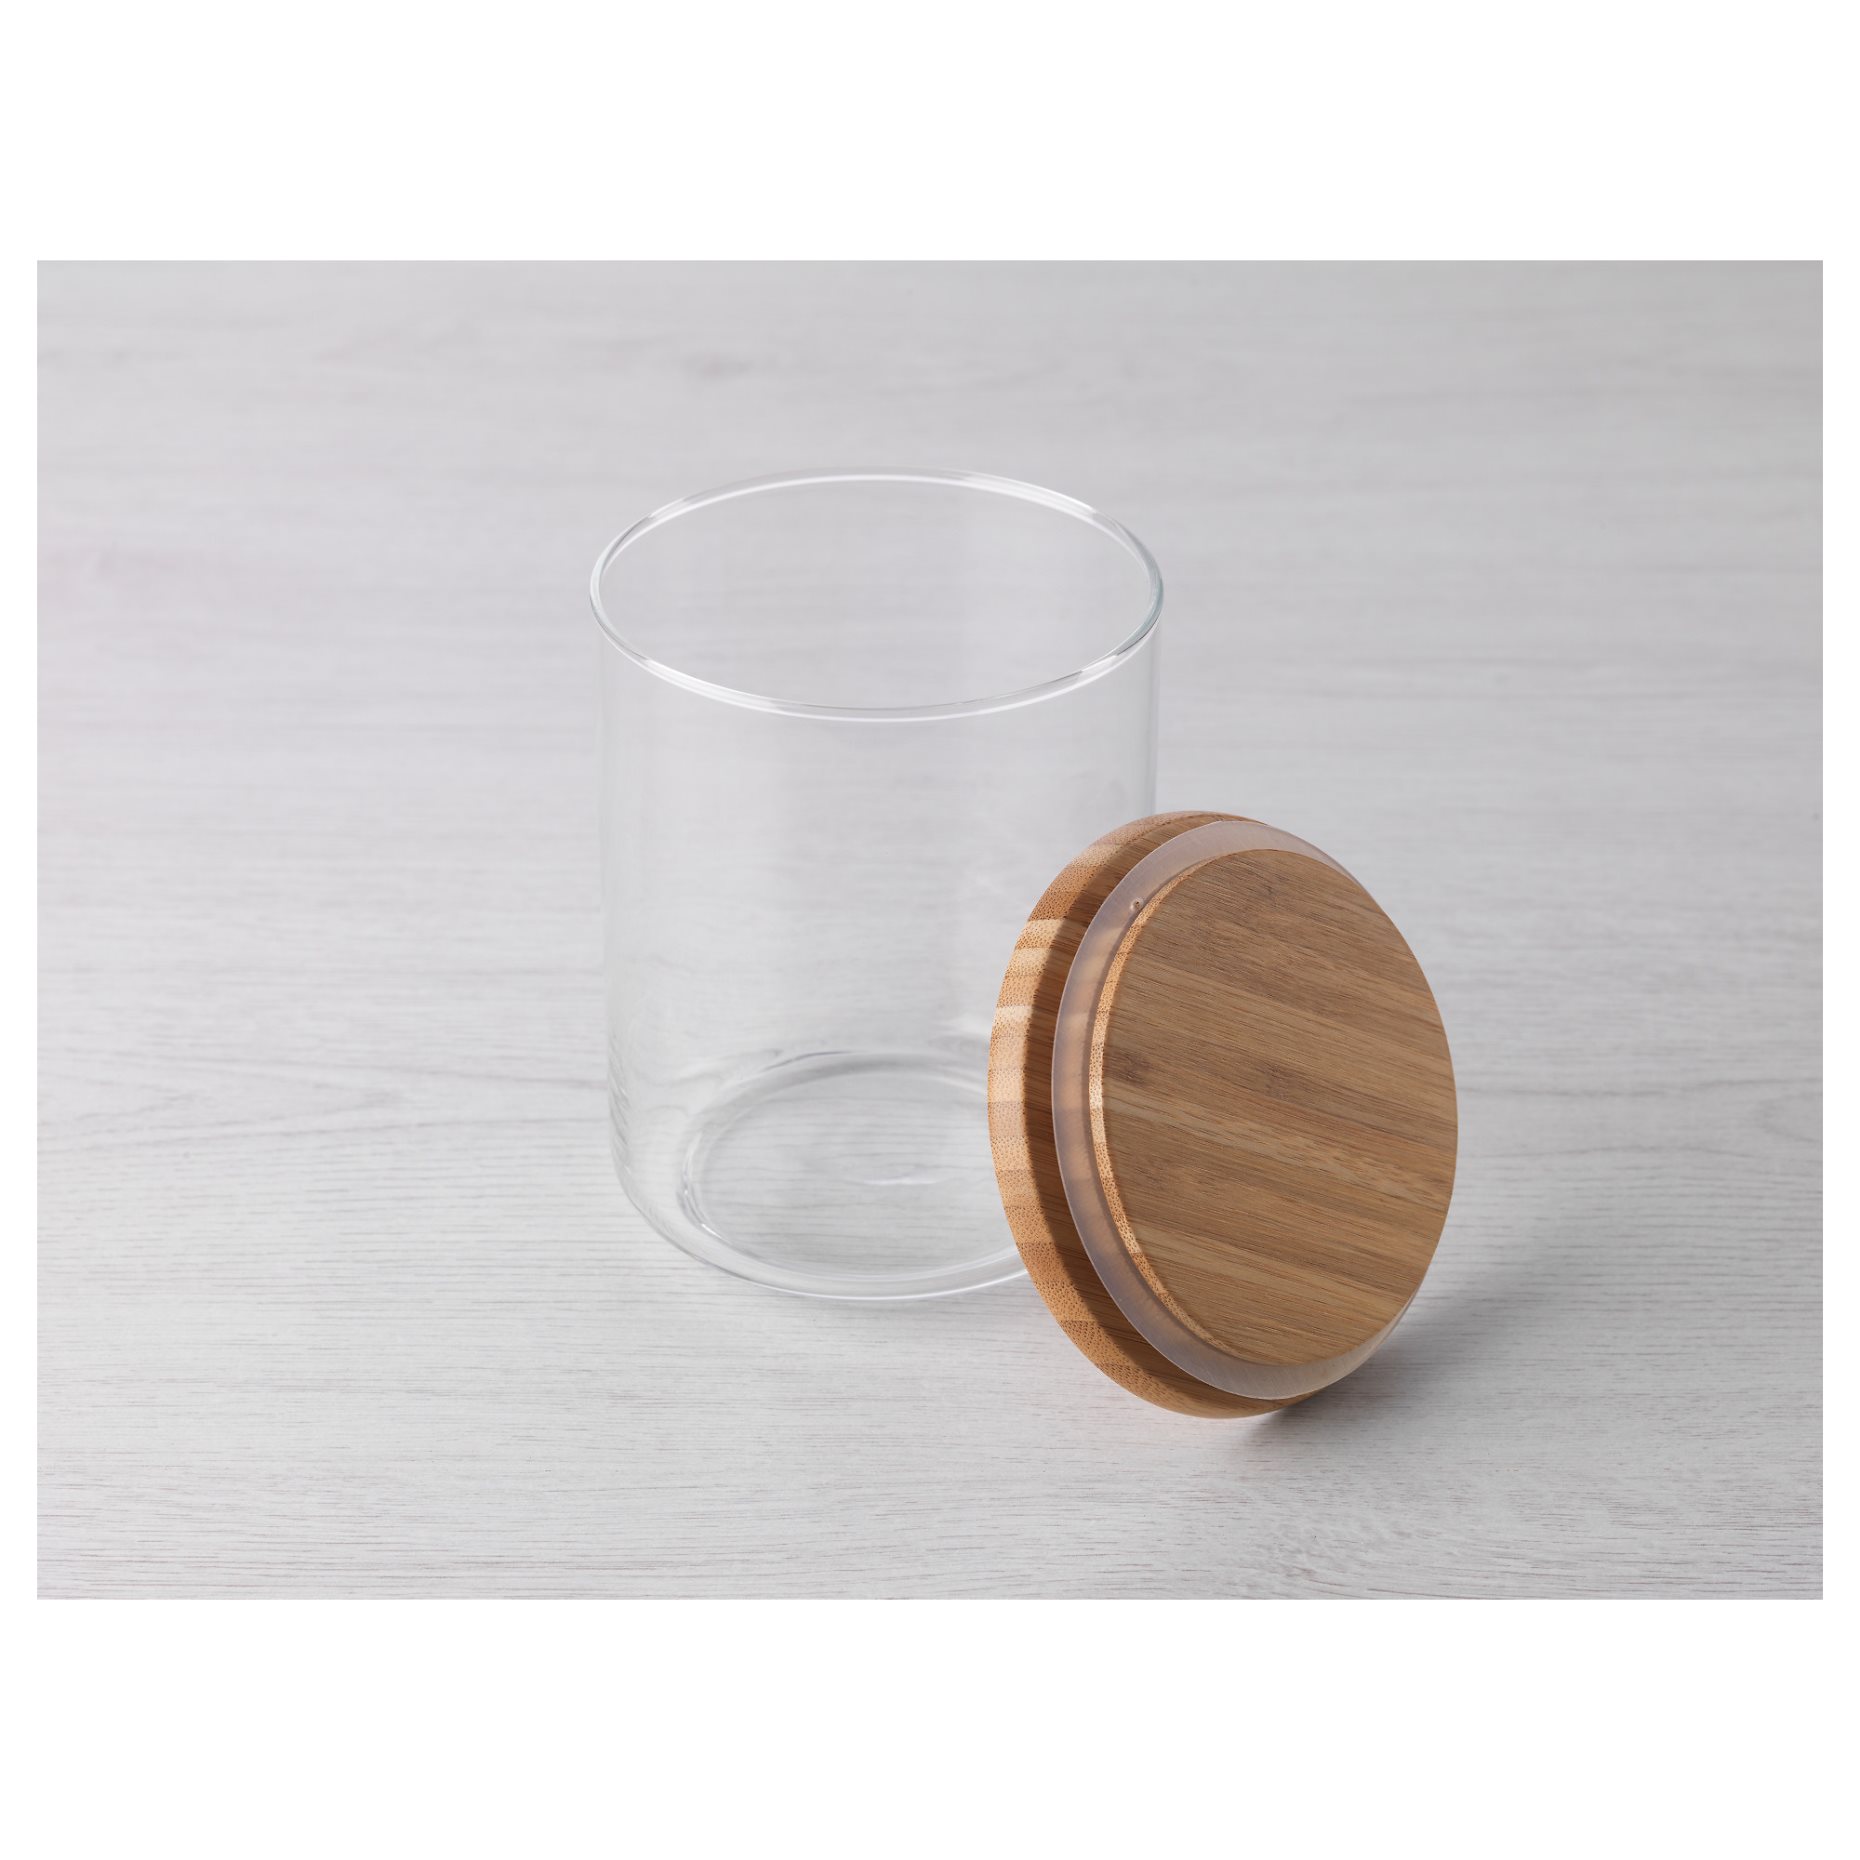 EKLATANT, jar with lid, 0.8 l, 103.766.01